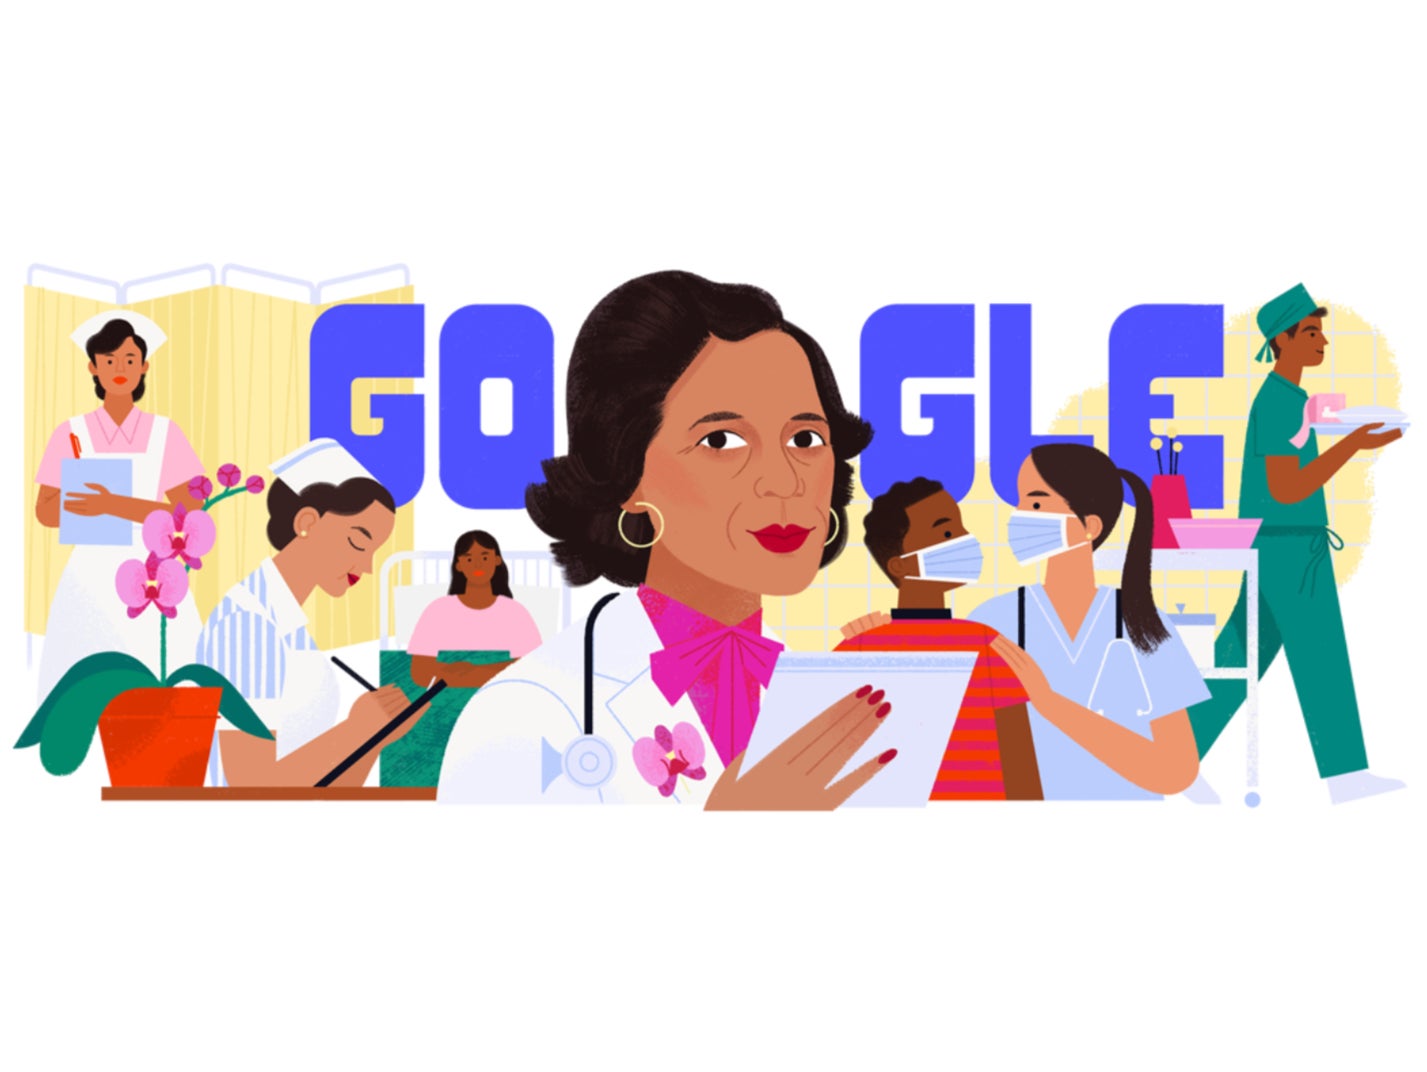 El buscador más grande del mundo honró la vida de Ildaura Murillo-Rohde, fundadora de la Asociación Nacional de Enfermeras Hispanas (NAHN) en Estados Unidos, con su Doodle del día.